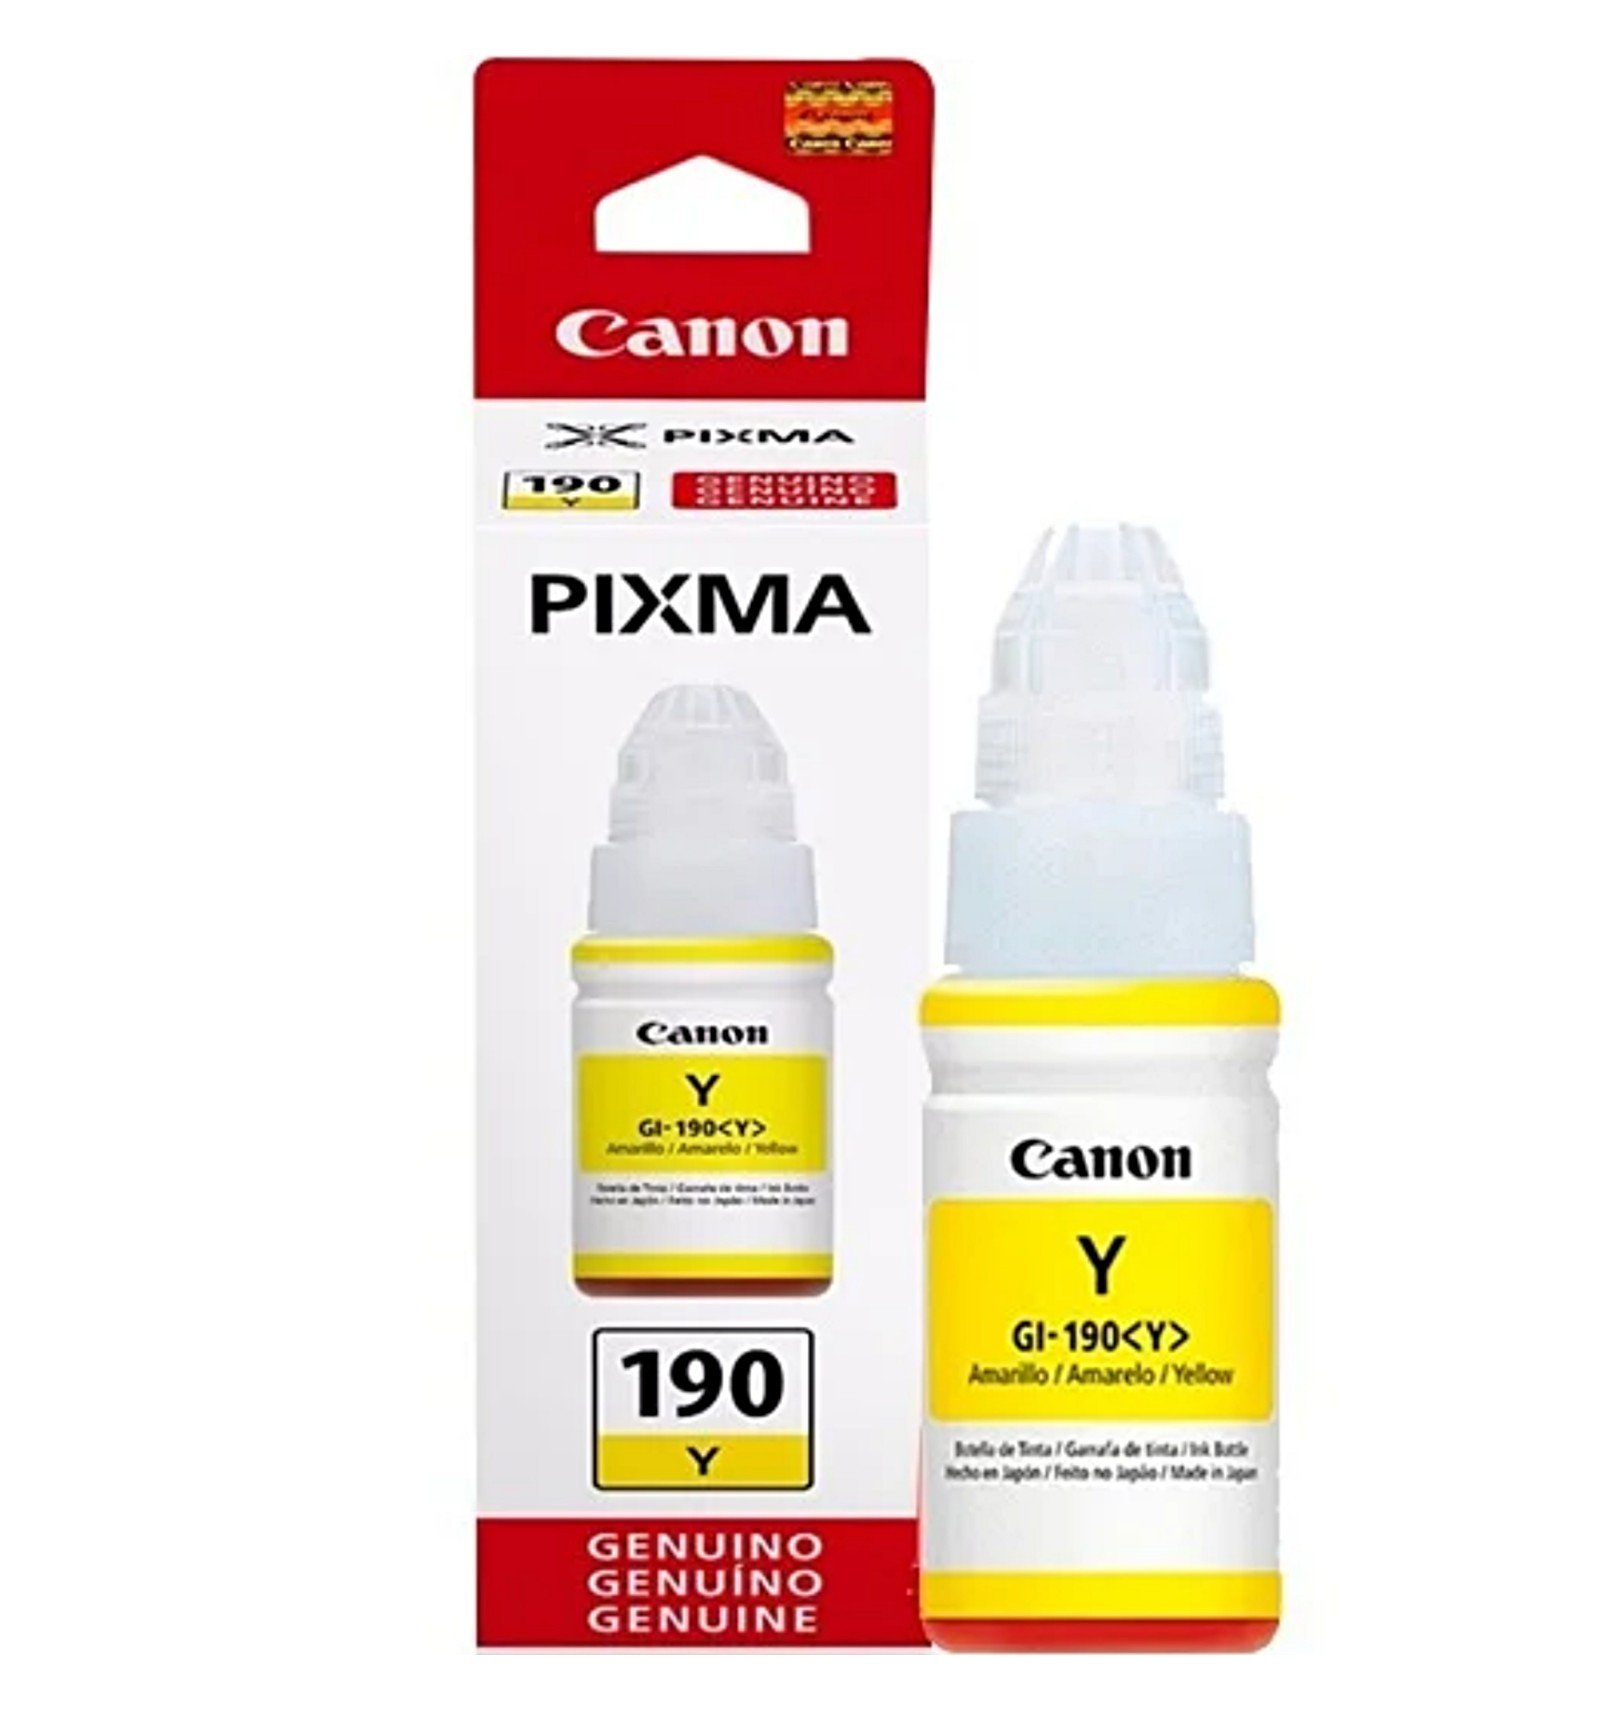 Canon pixma 190 yellow